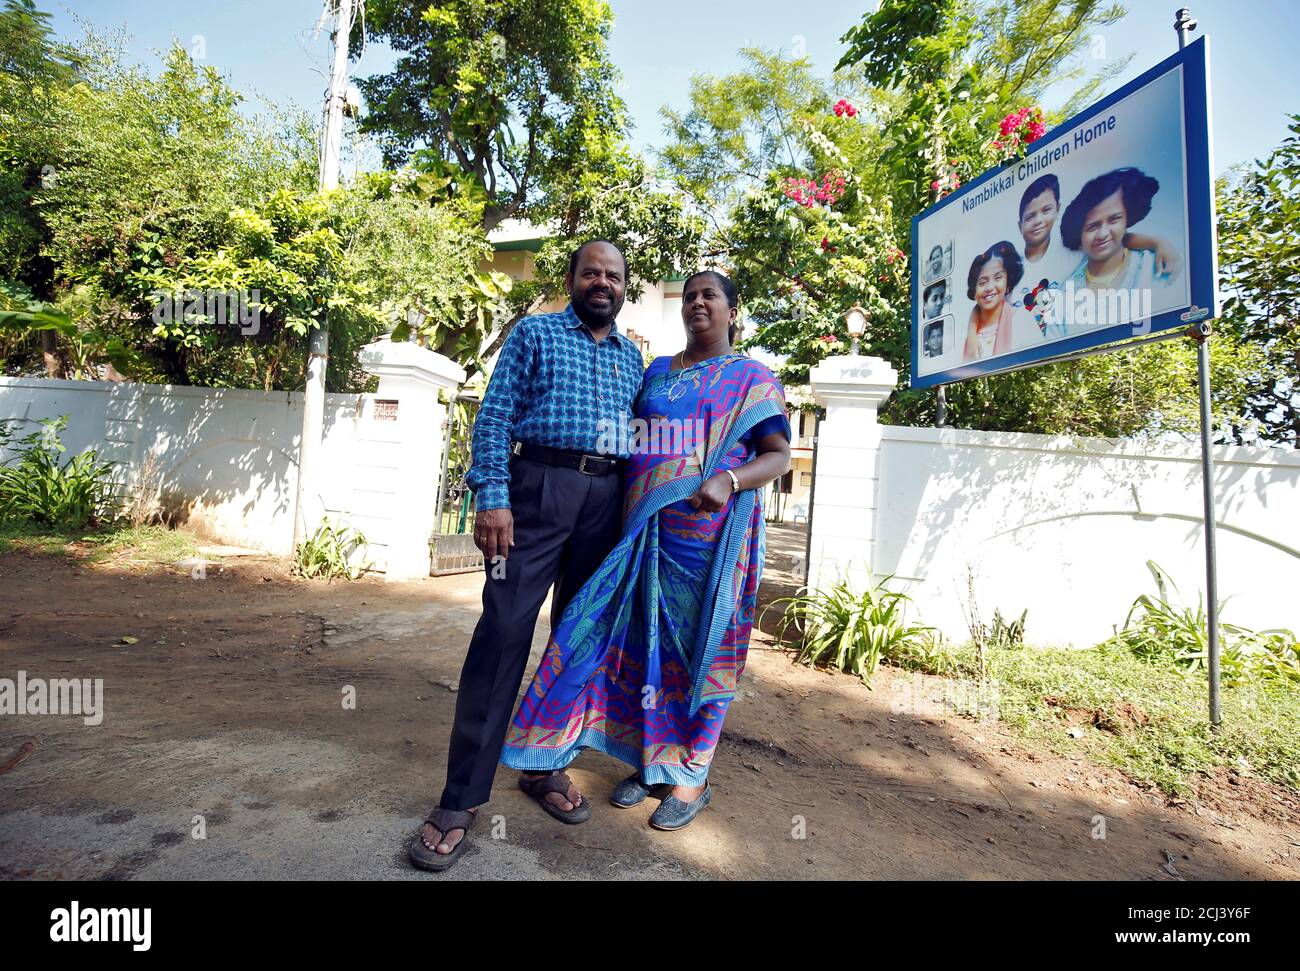 Karibeeran Paramesvaran y su esposa Choodamani, que perdió a tres niños en el tsunami de 2004, posan fuera de su casa que se han convertido en un hogar para niños huérfanos en el distrito de Nagapattinam en el estado sureño de Tamil Nadu, India, 4 de diciembre de 2019. Foto tomada el 4 de diciembre de 2019. REUTERS/P. Ravikumar Foto de stock